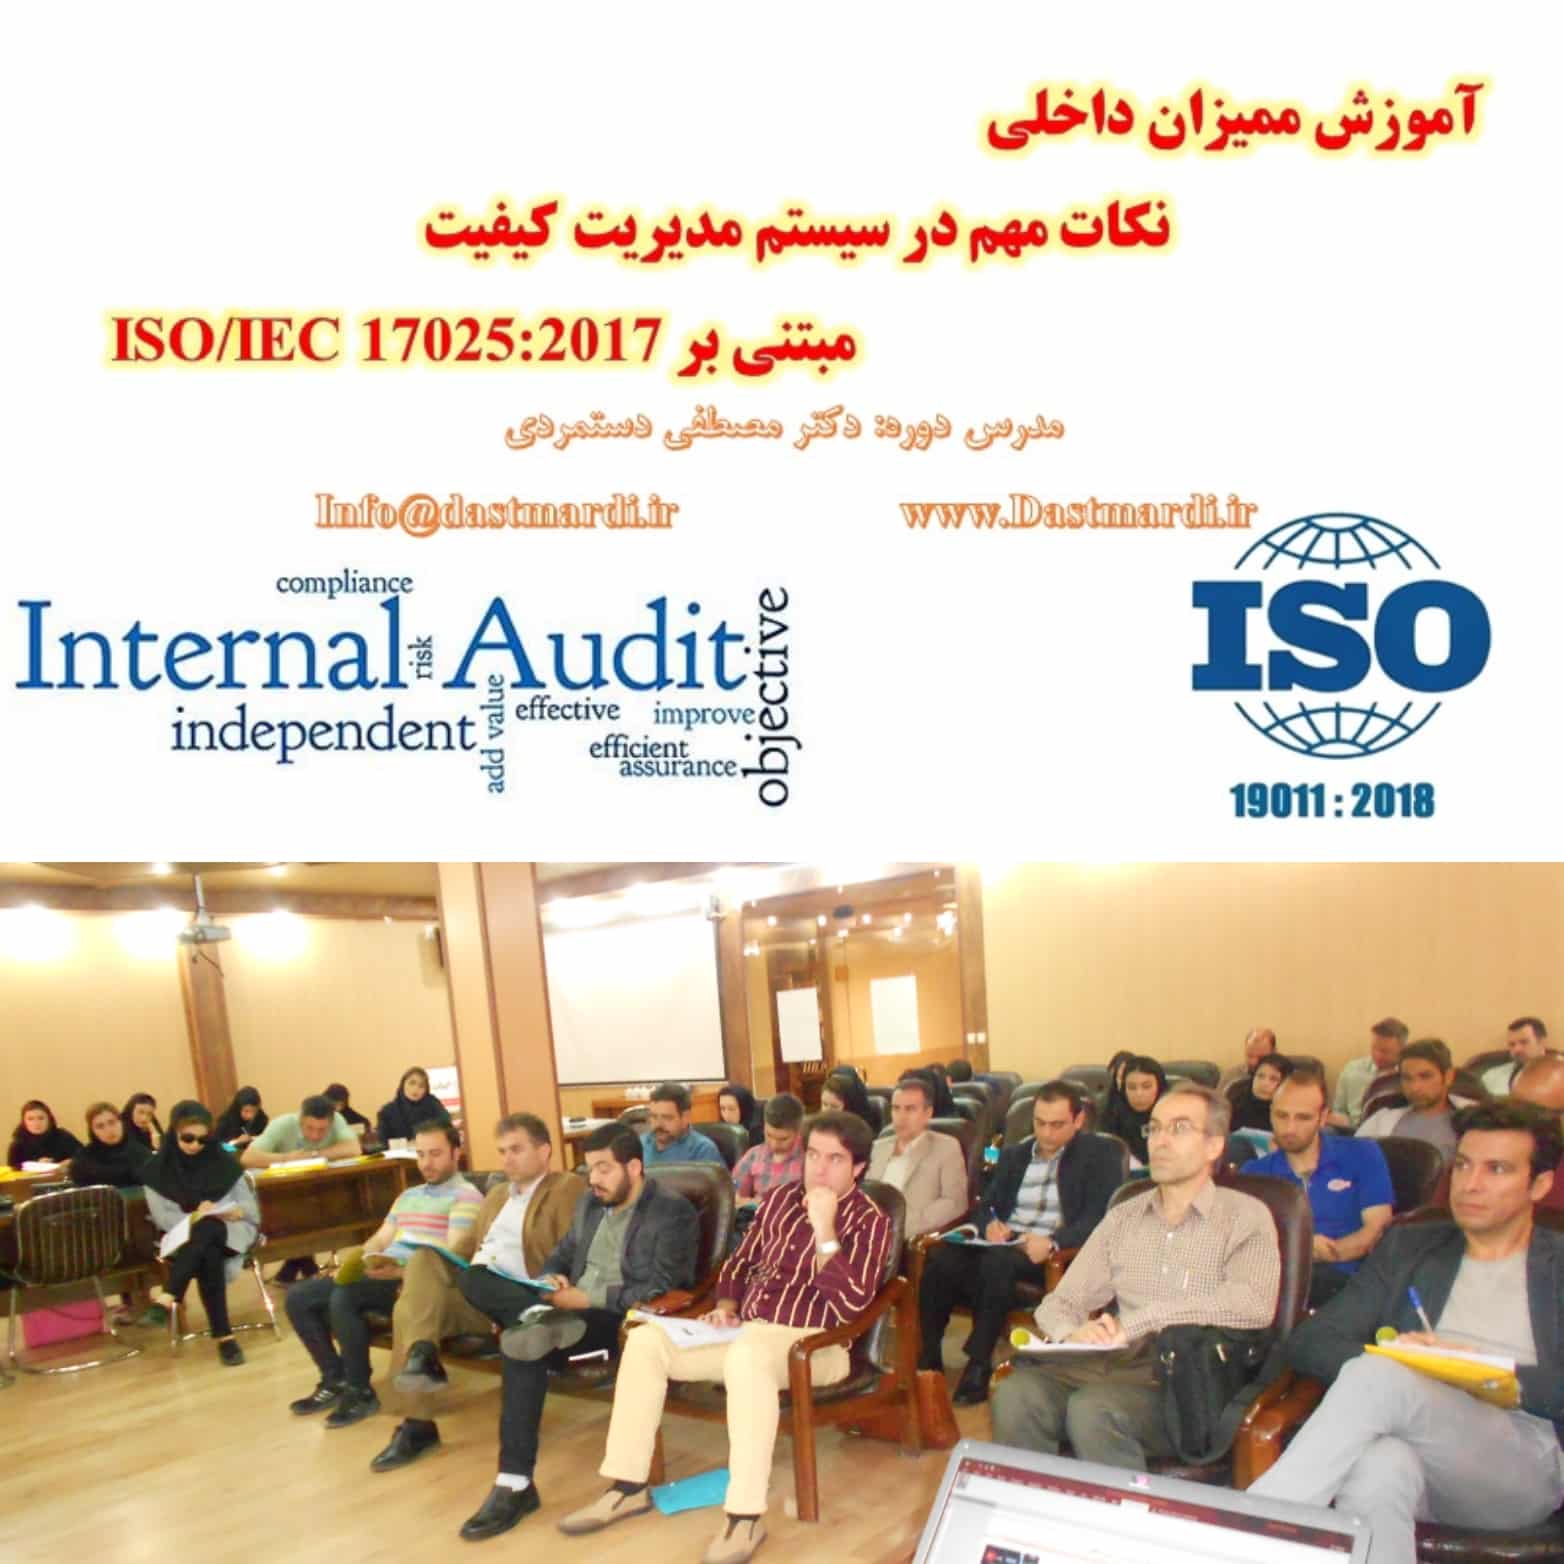 IMG 20190517 065418 برگزاری دوره آموزشی ممیزی داخلی مراکز آزمایشگاهی مبتنی بر استاندارد ISO/IEC 17025:2017 در اداره استاندارد استان زنجان